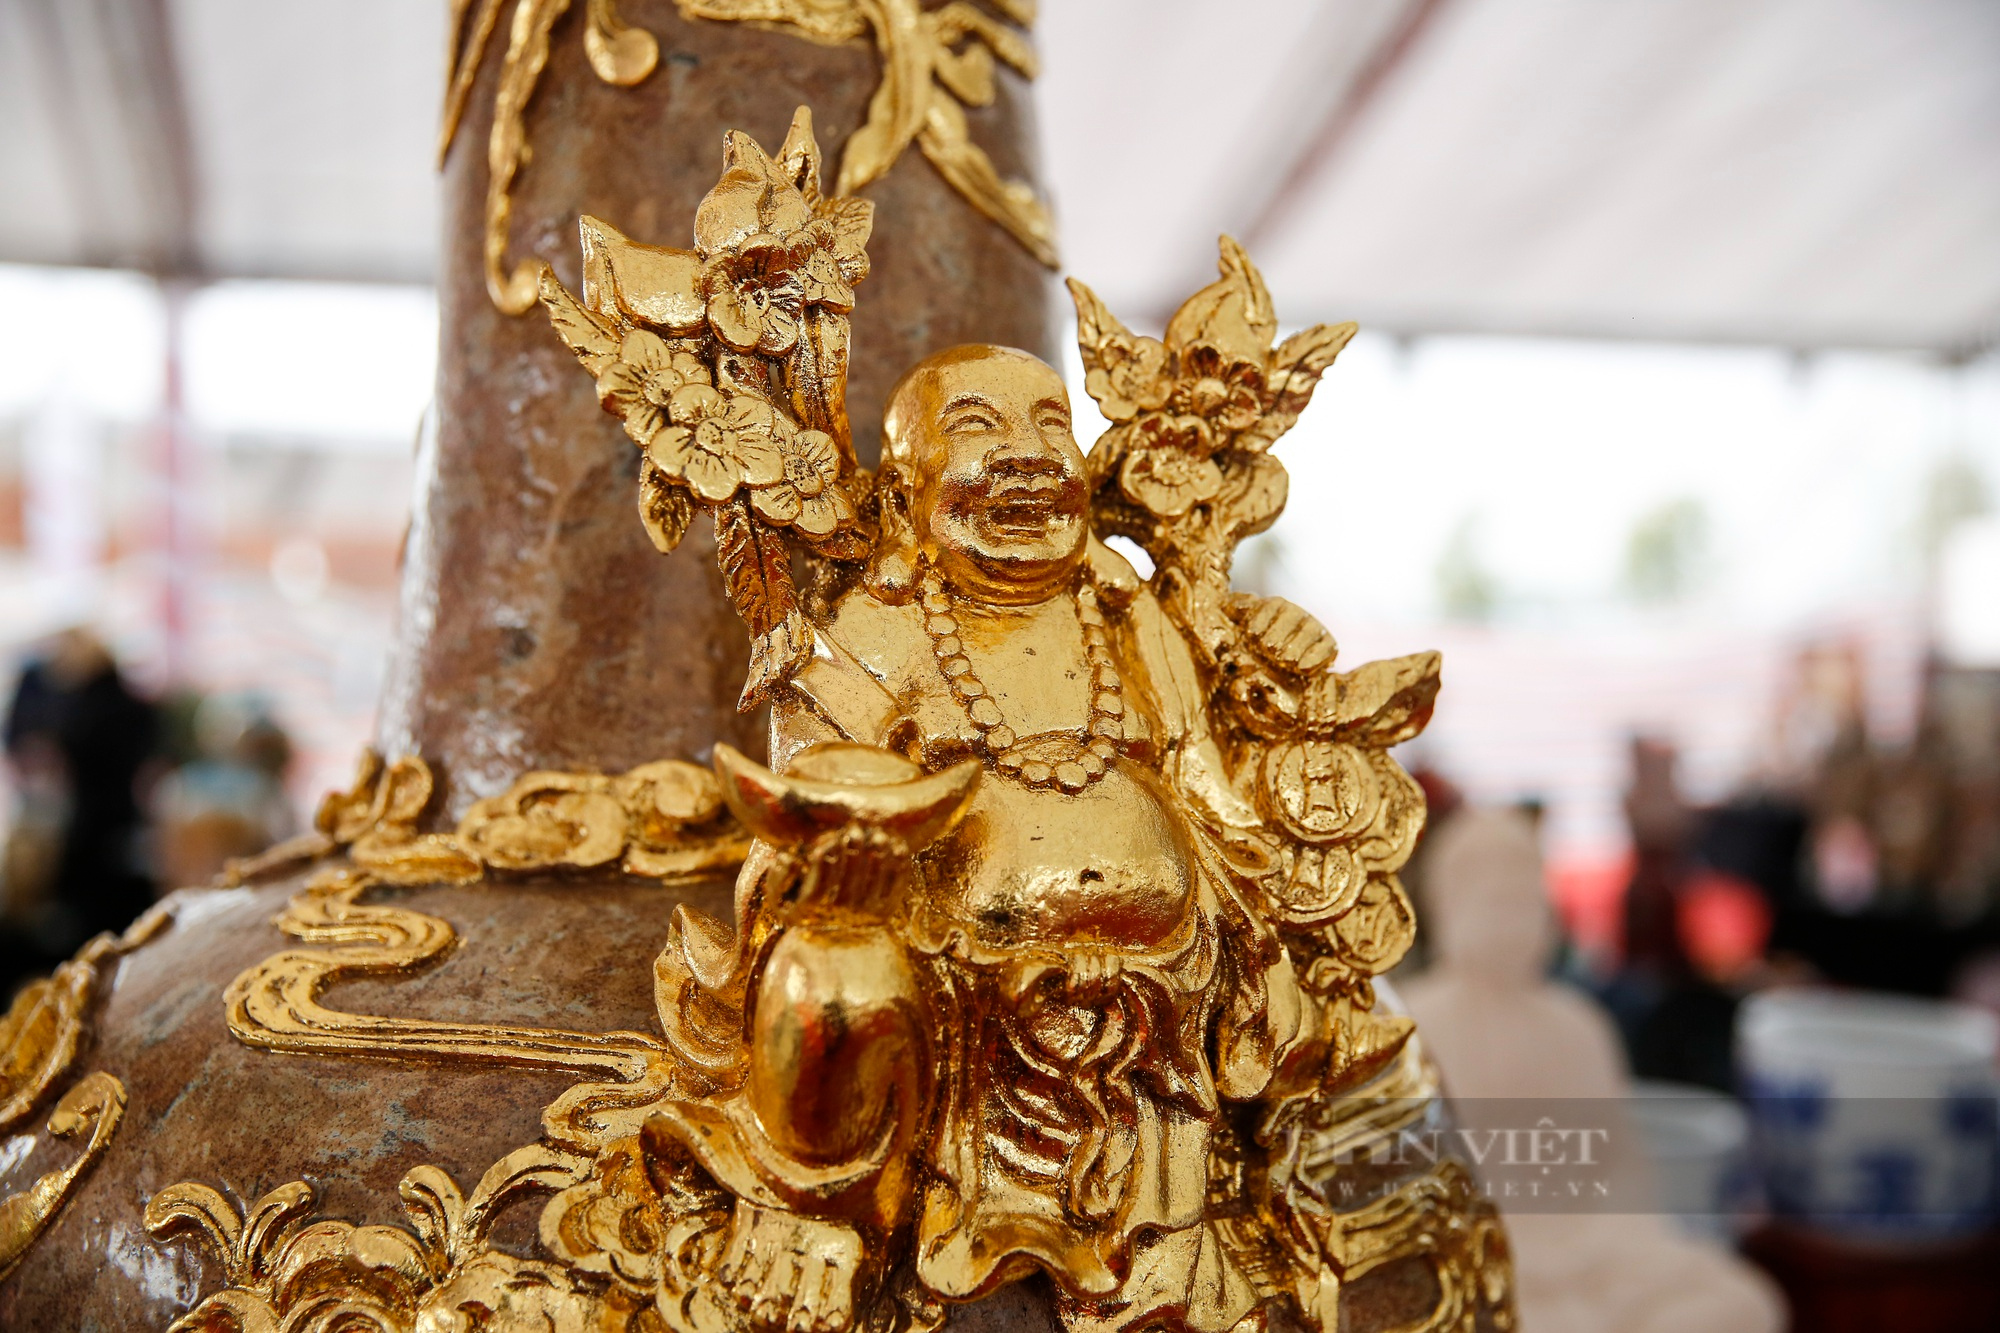 Bát Tràng mang lục bình gốm mạ vàng giá 600 triệu/đôi đến Festival sản phẩm nông nghiệp và làng nghề Hà Nội - Ảnh 12.